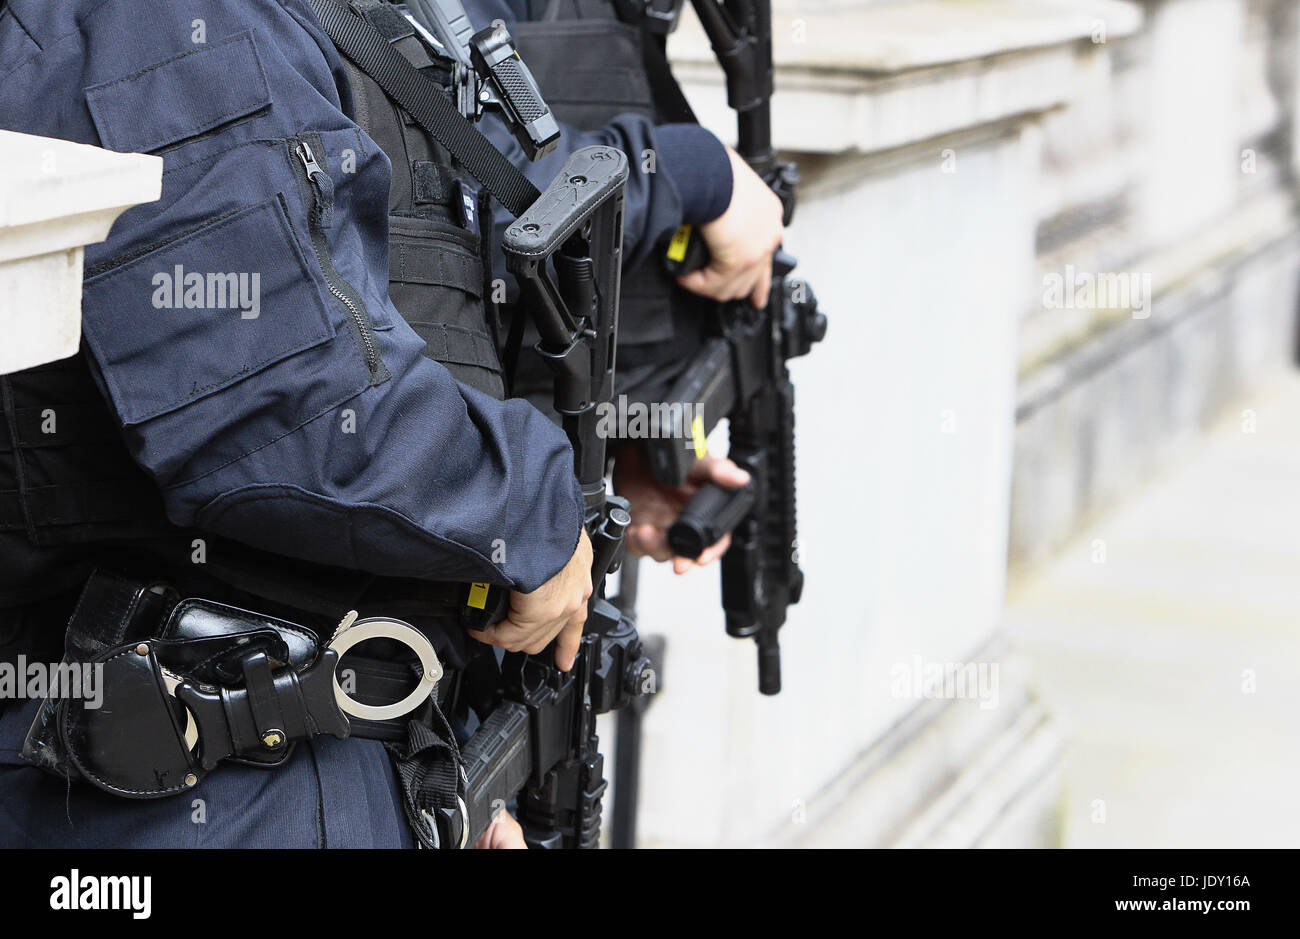 Legge & ordine, i funzionari di polizia che trasportano armi da fuoco. Foto Stock